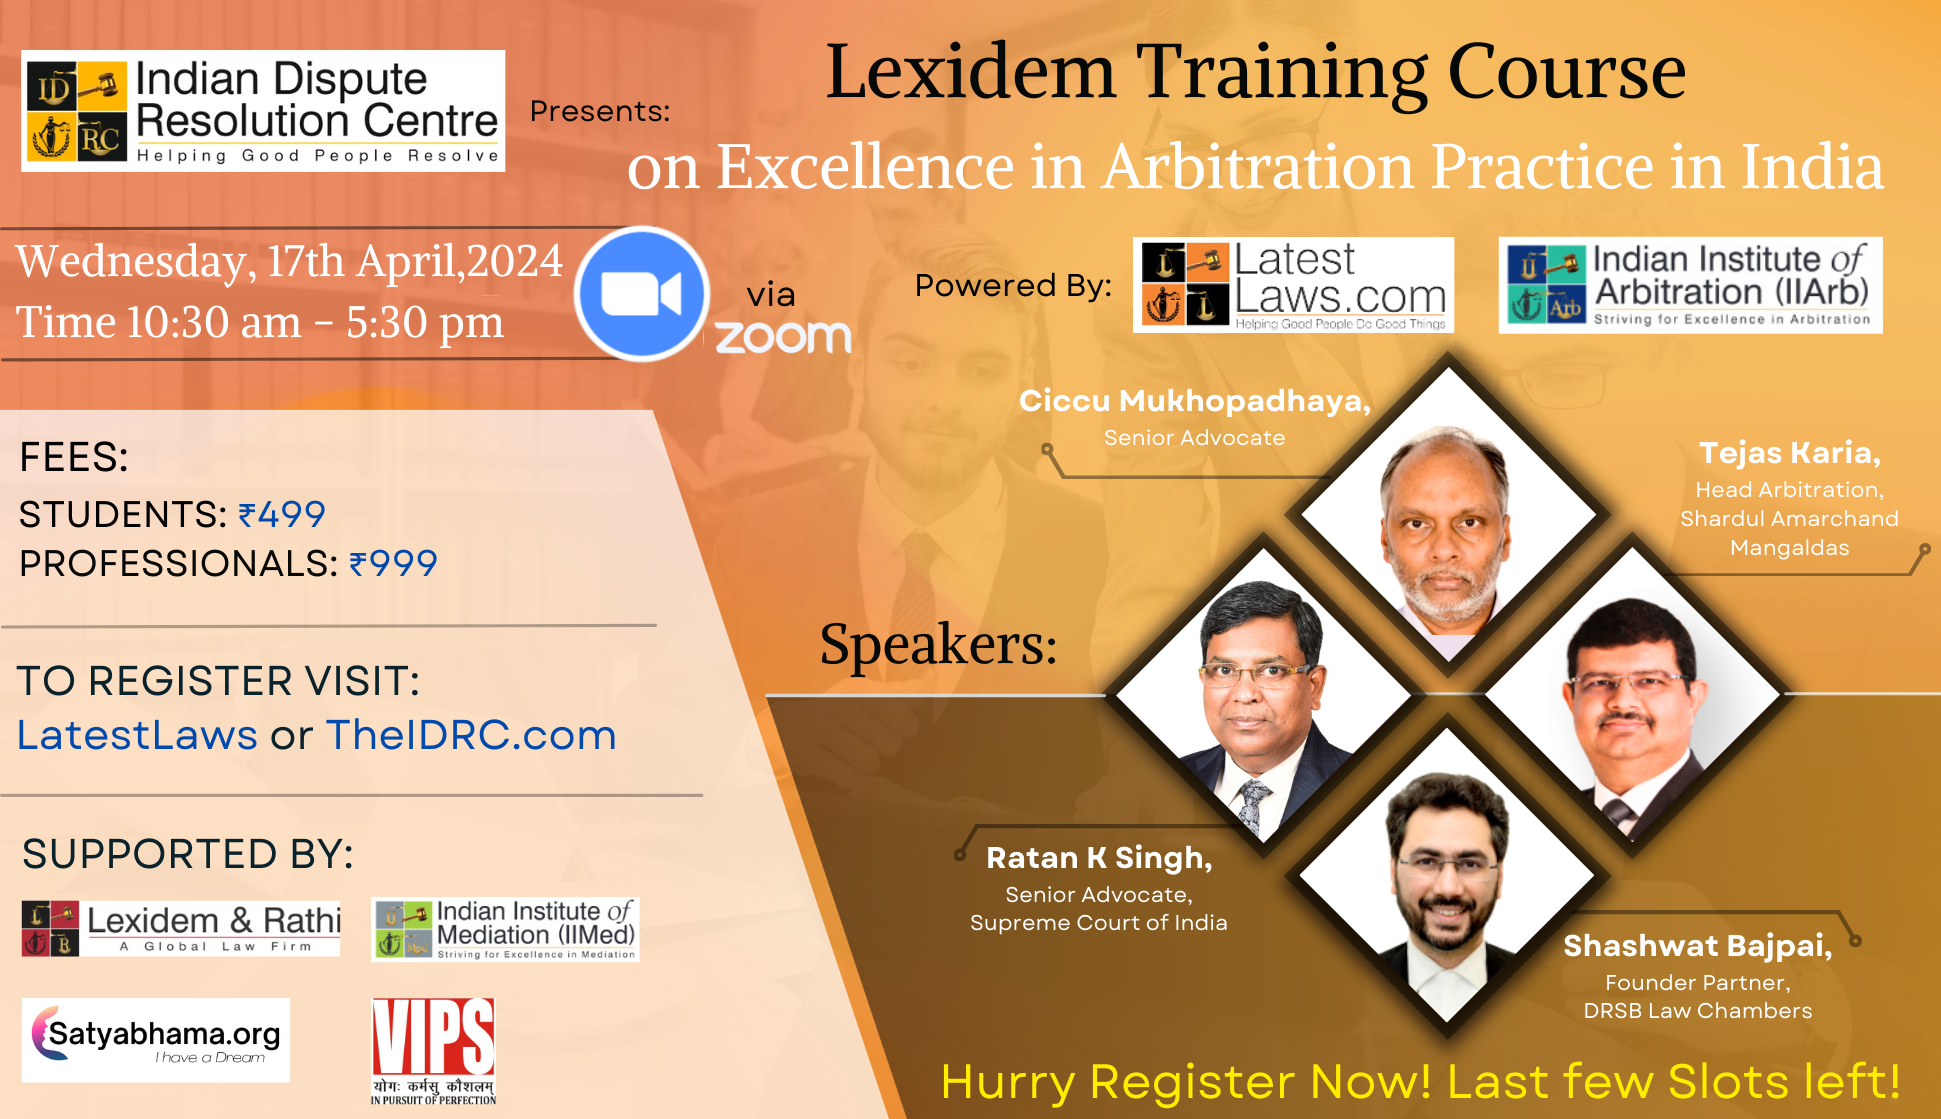 LatestLaws.com and IDRC present Lexidem Training Course